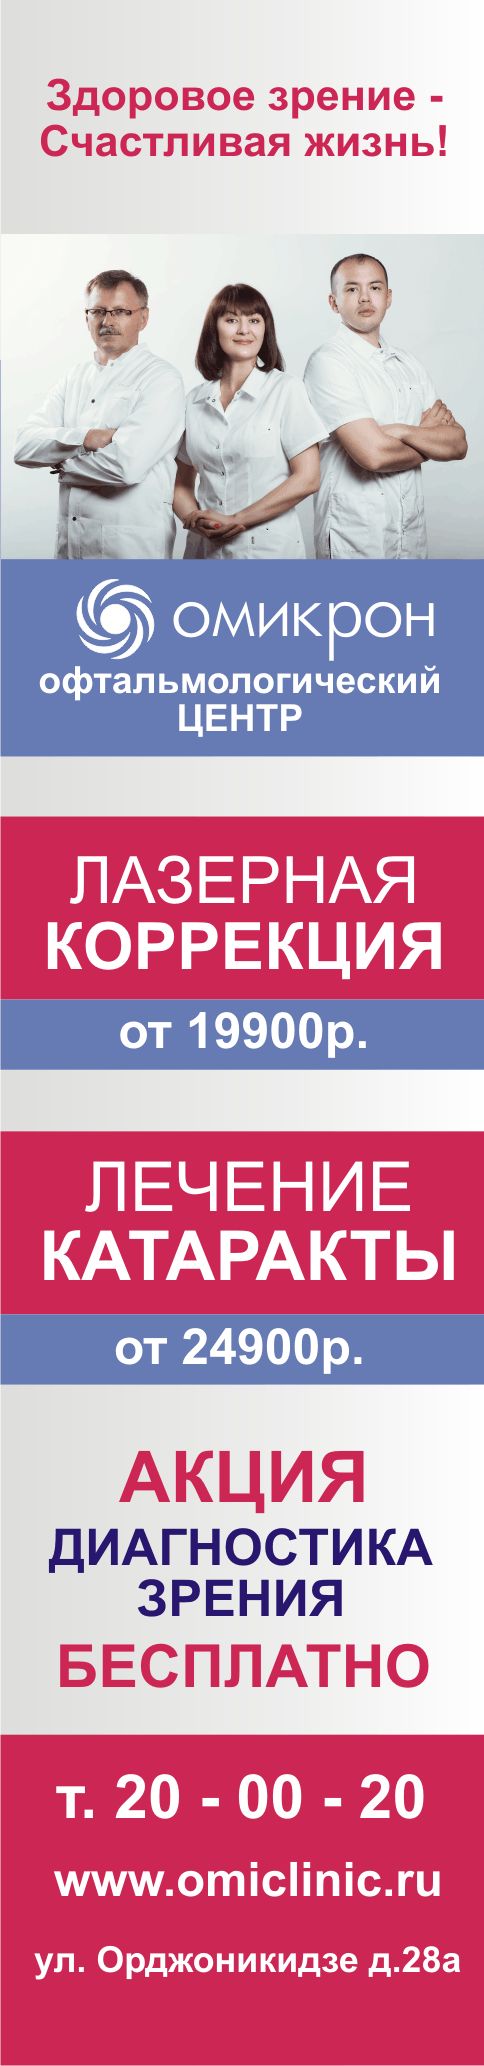 Плакат 50 оттенков счастья II - дизайнер vladim